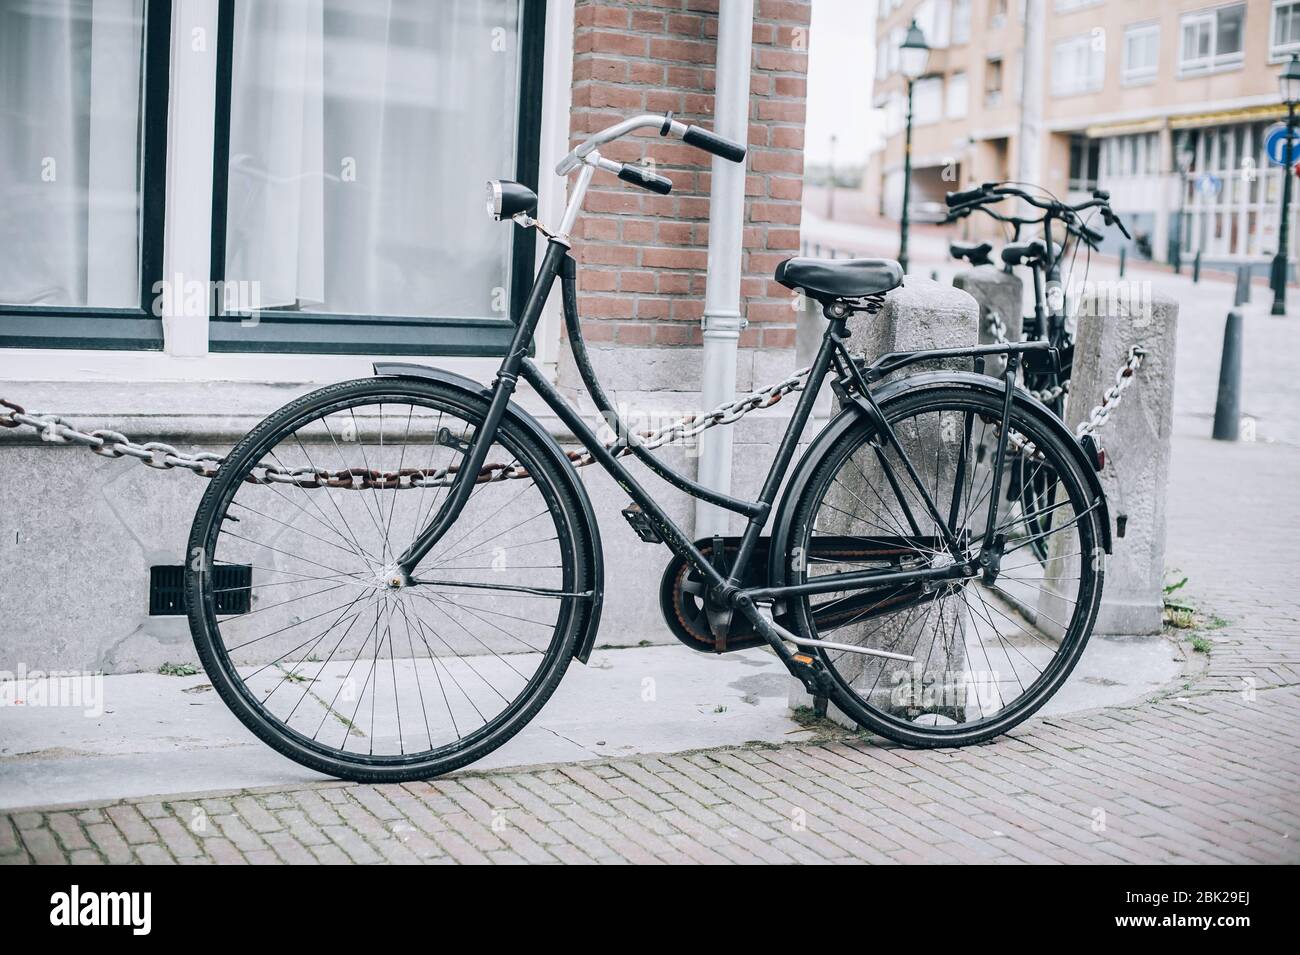 Old Dutch Bike Online, 59% OFF | www.ingeniovirtual.com